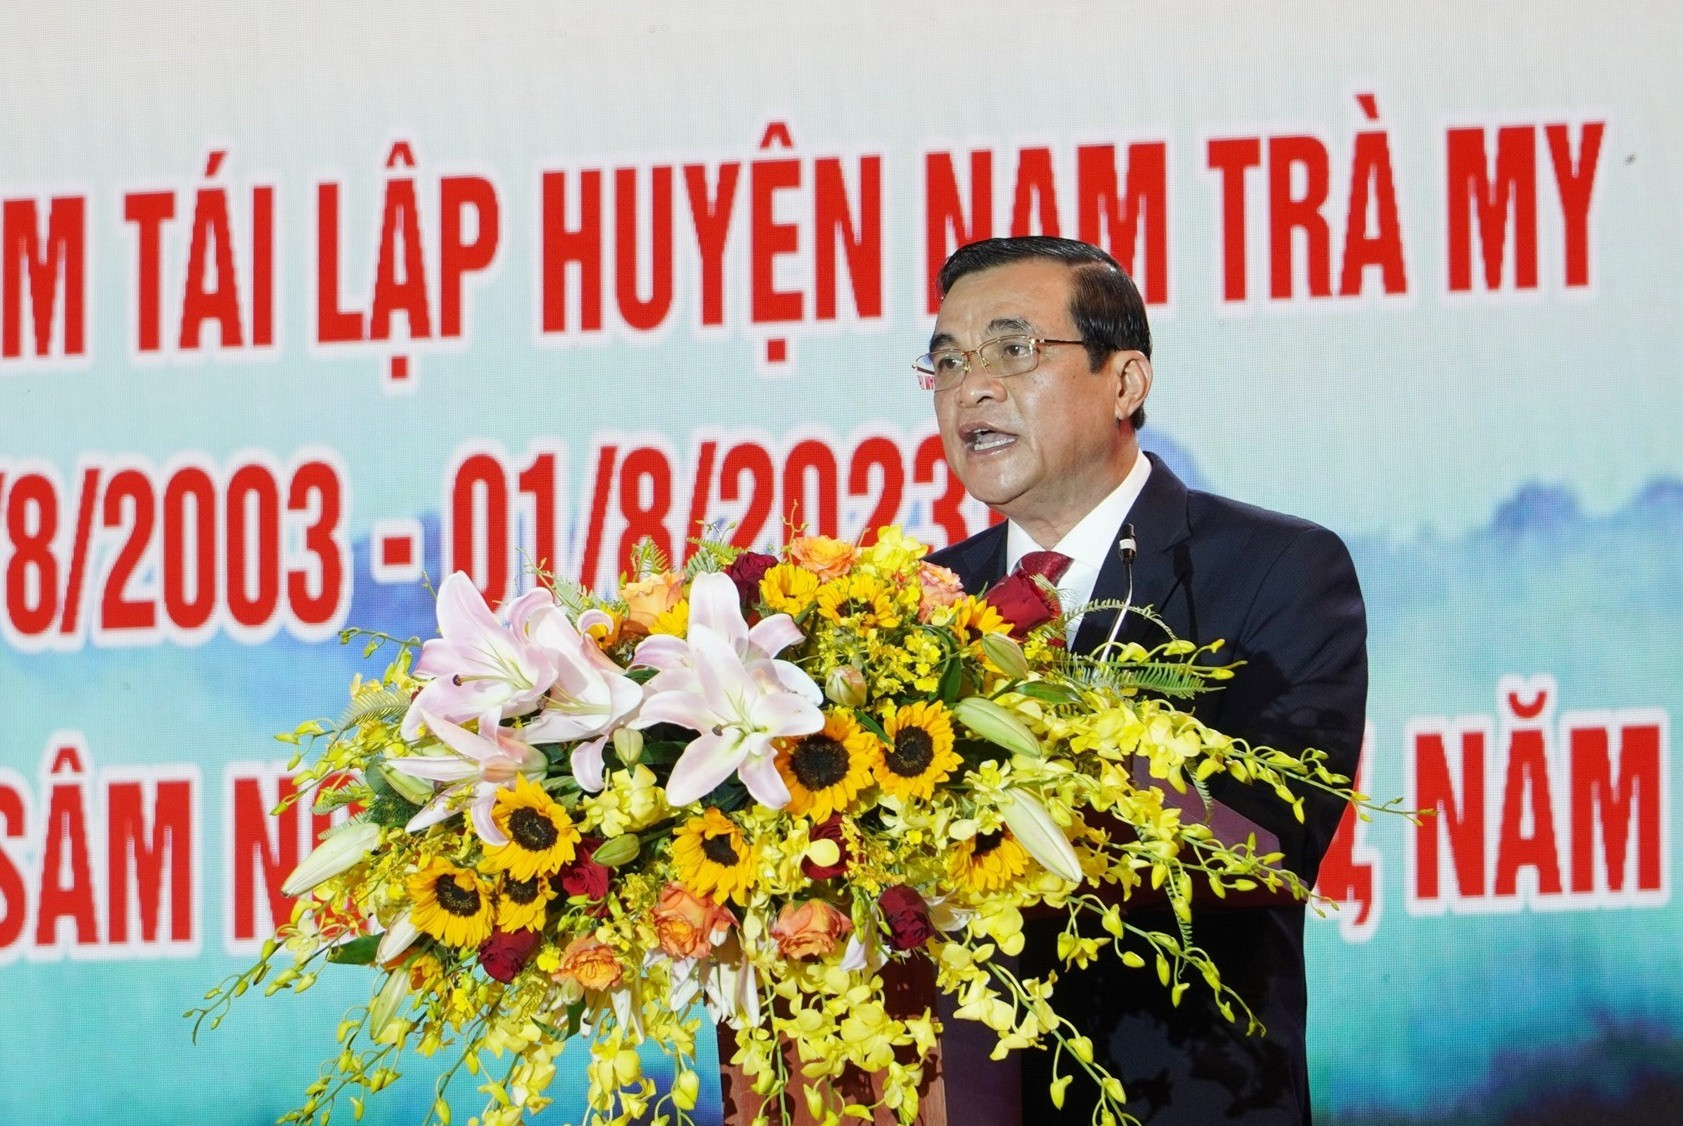 Bí thư Tỉnh ủy Phan Việt Cường phát biểu tại lễ kỷ niệm 20 năm tái lập huyện Nam Trà My. Ảnh: Q.L